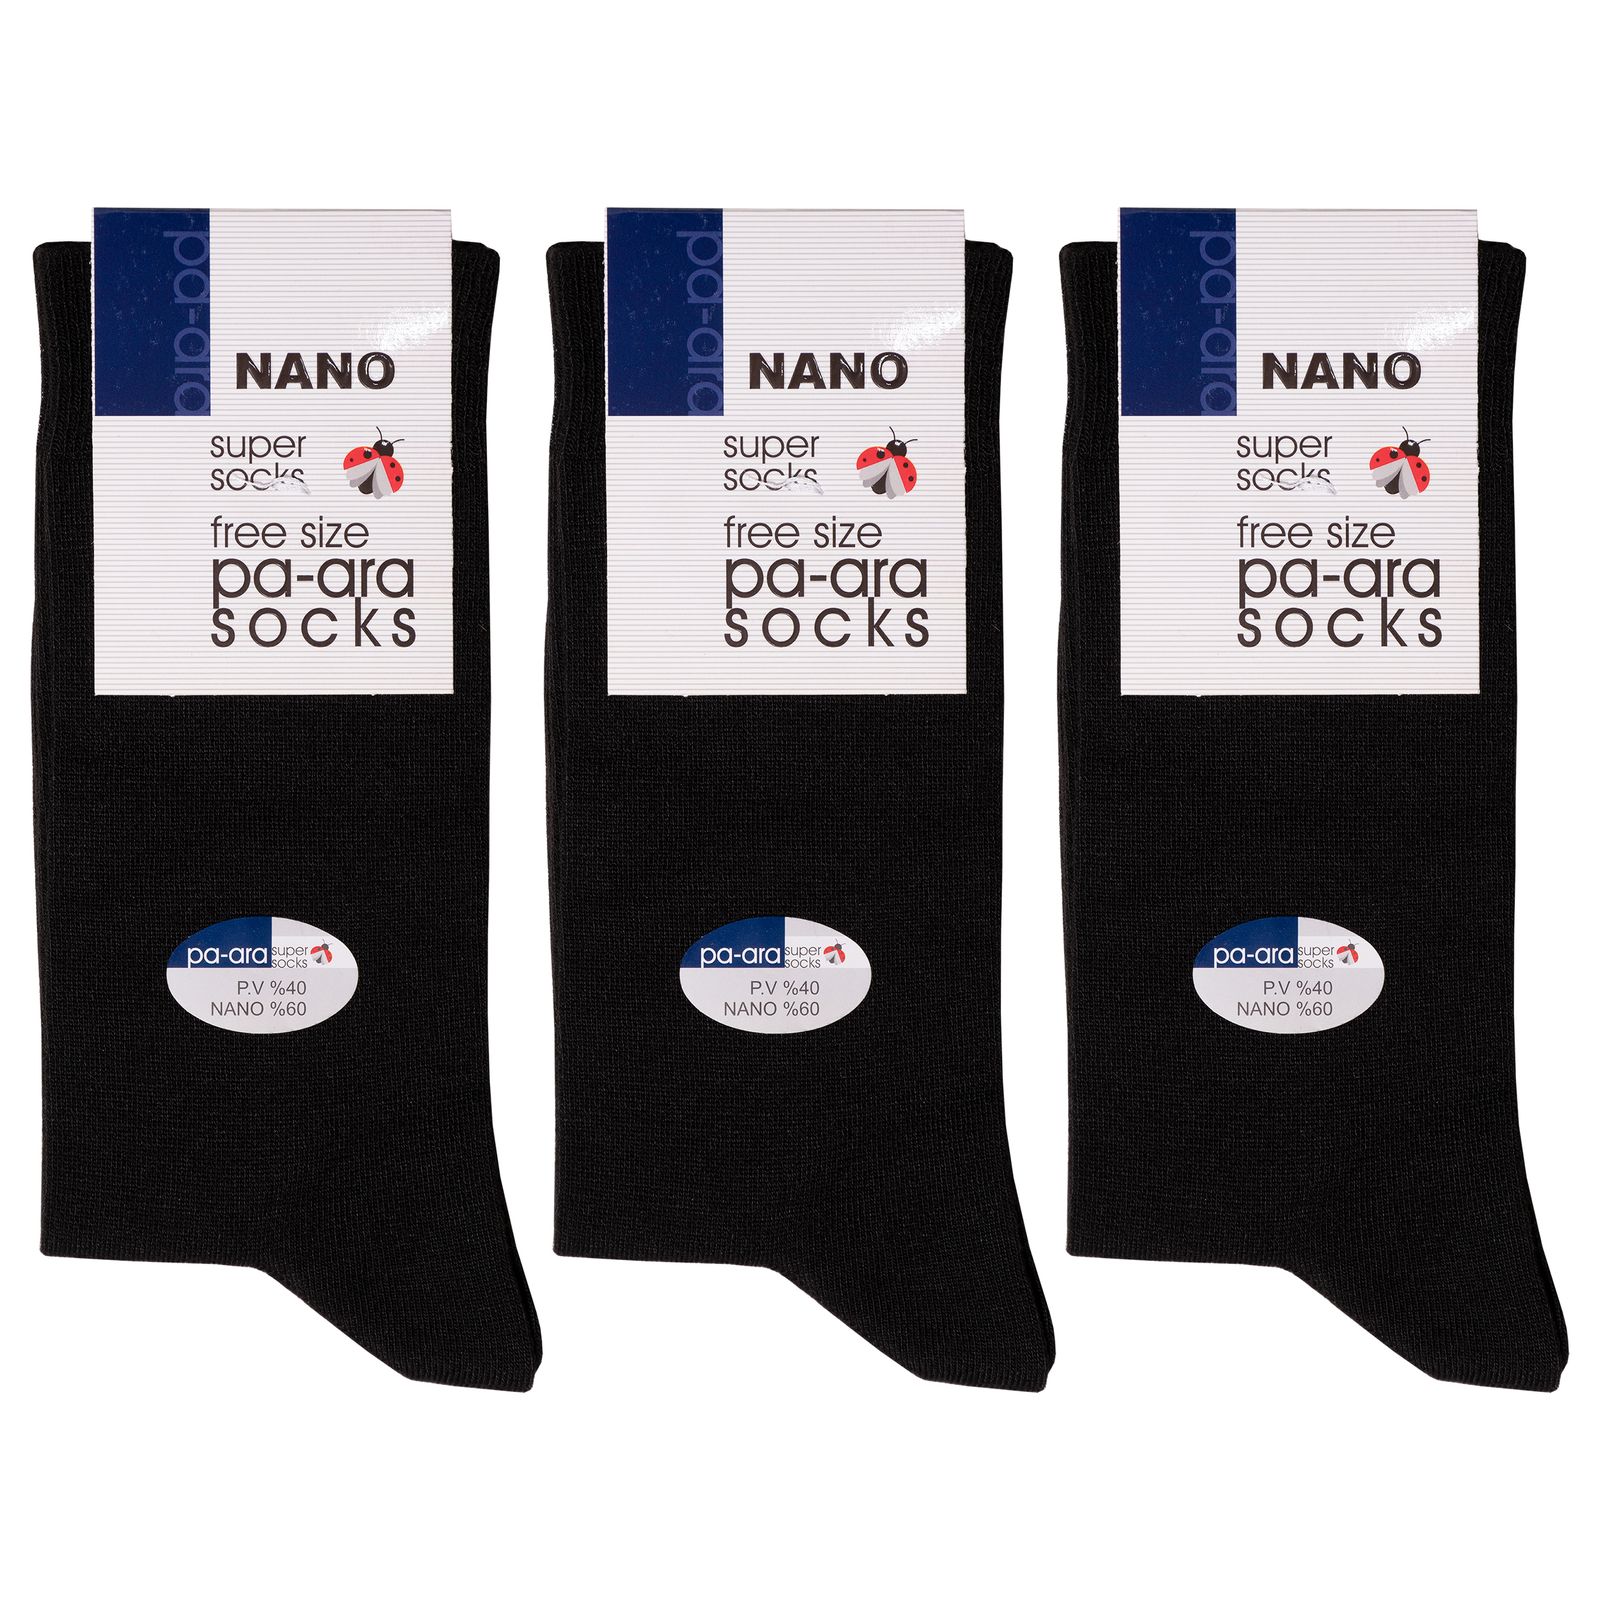 جوراب مردانه پاآرا مدل نانو 60 کد 6009 بسته 3 عددی -  - 2